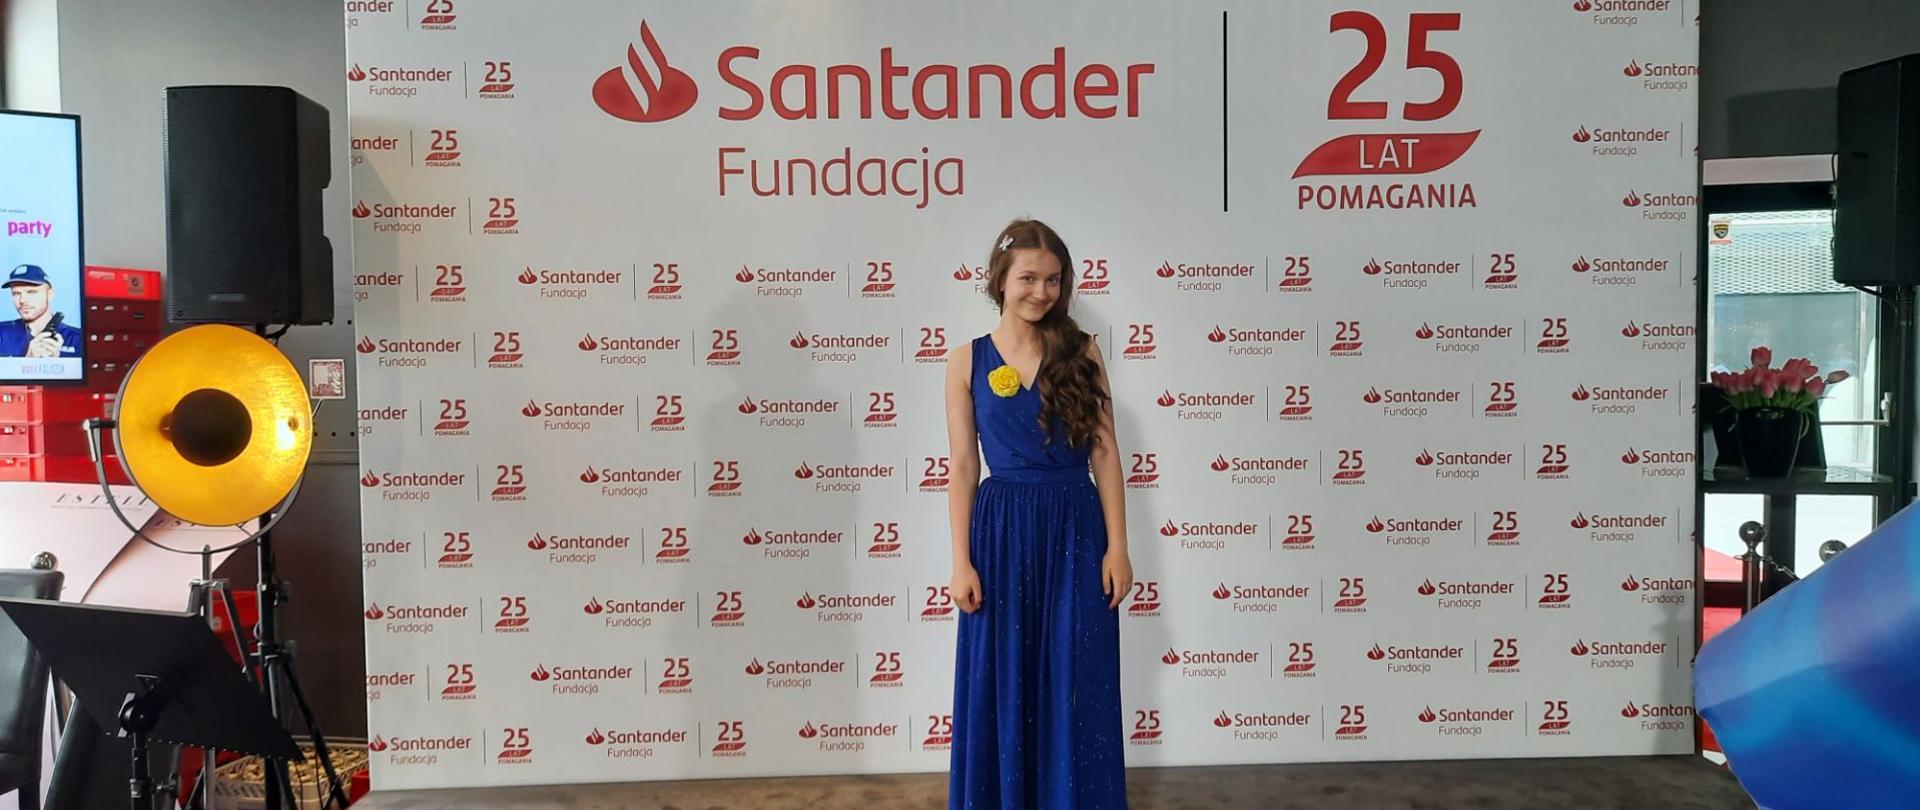 Antonina Waliszewska w niebieskiej sukience stoi na tle ścianki Fundacji Santander.